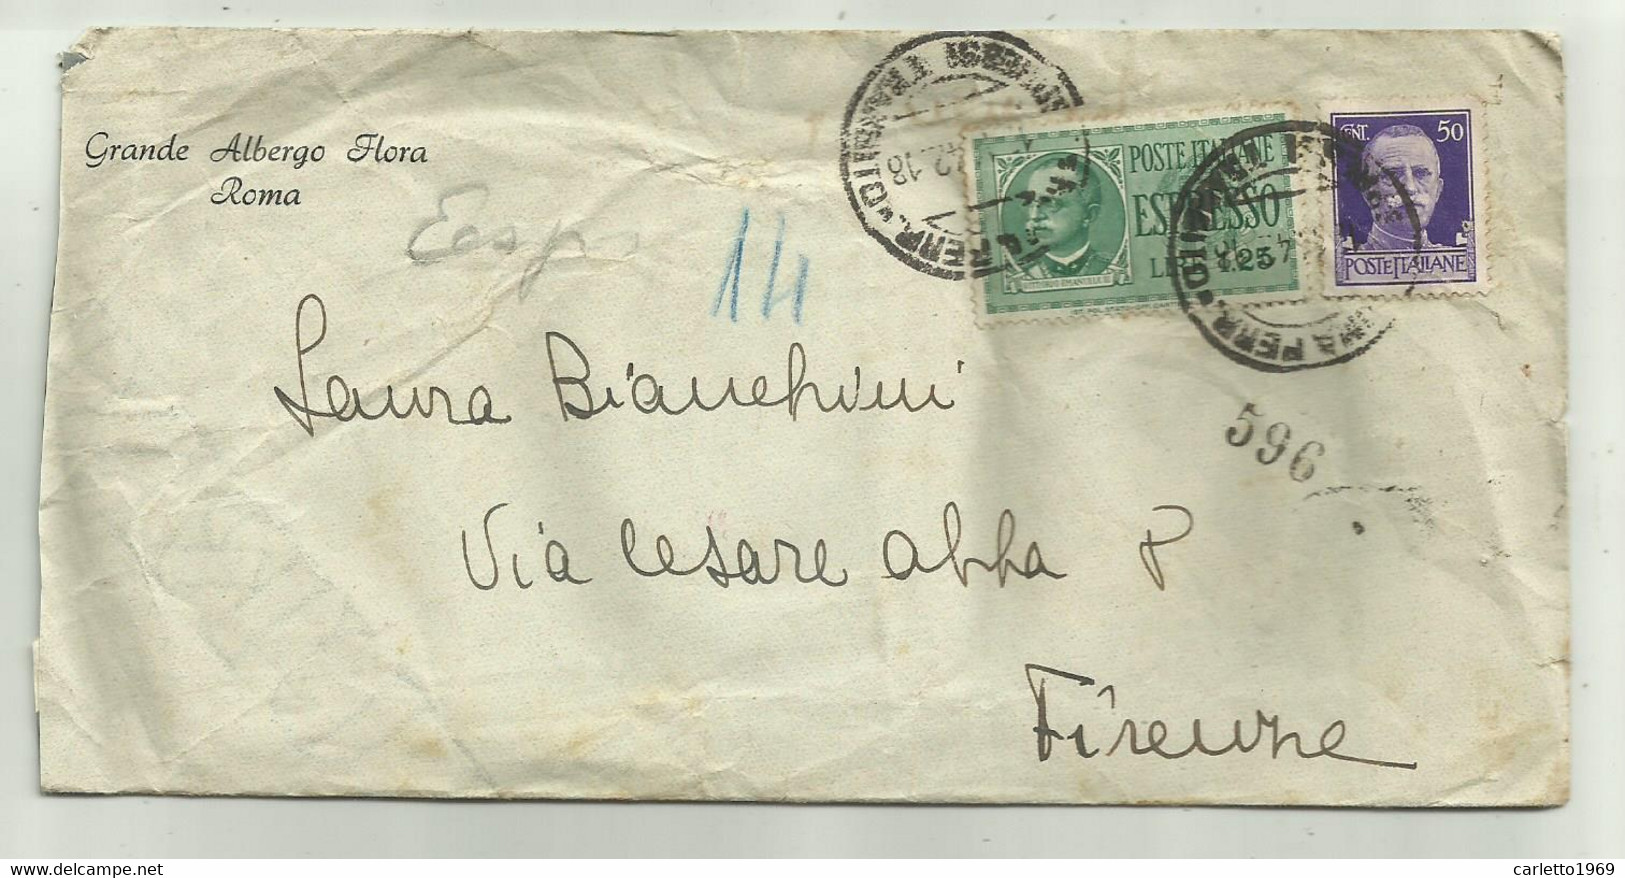 ESPRESSO LIRE 1,25 + CENT. 50 SU BUSTA GRANDE ALBERGO FLORA ROMA 1942 - Used